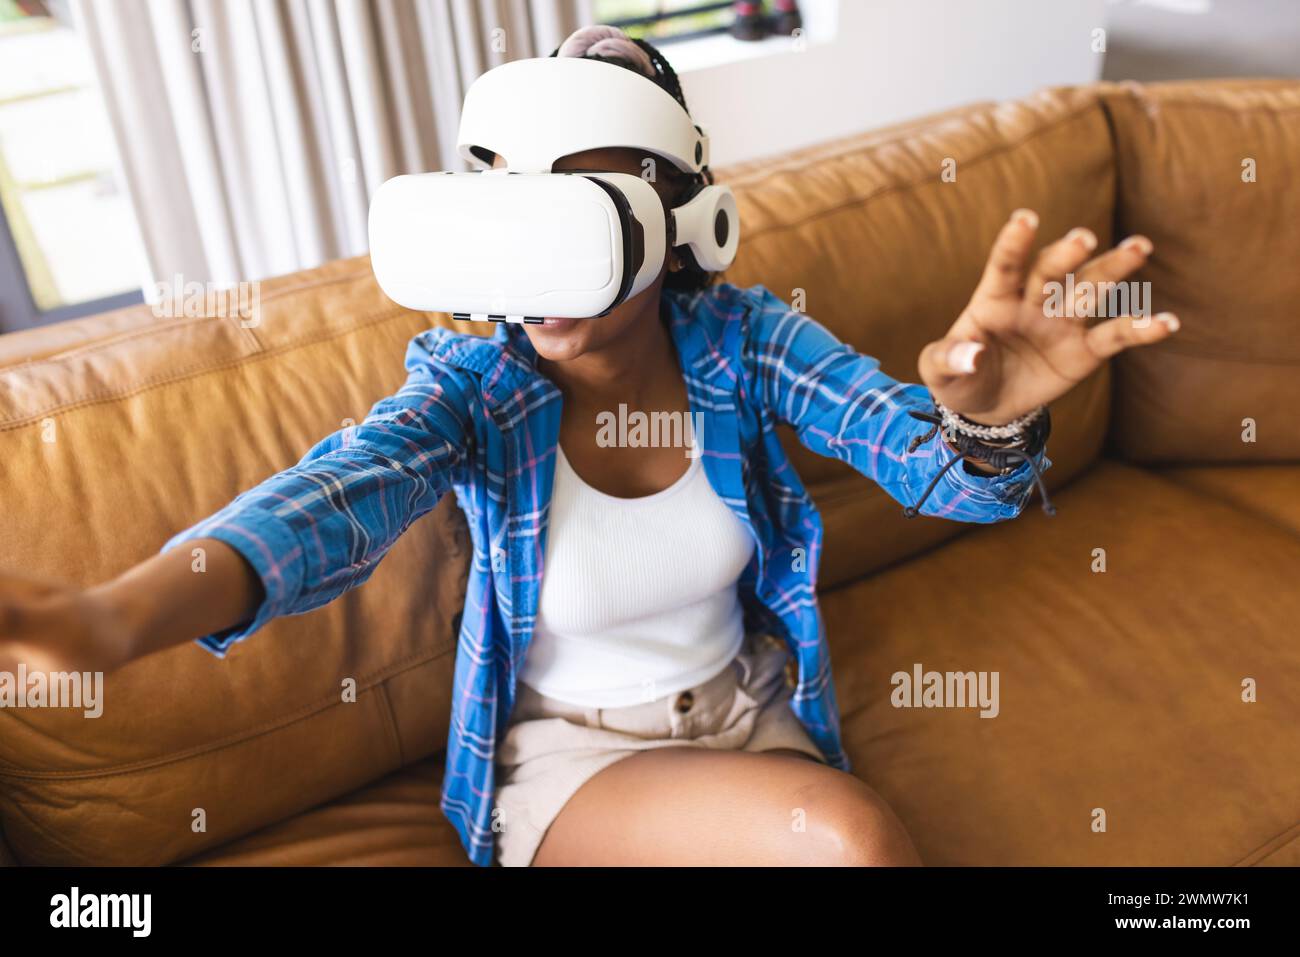 Die junge afroamerikanische Frau erforscht die virtuelle Realität, indem sie mit ihren Händen Gesten macht Stockfoto